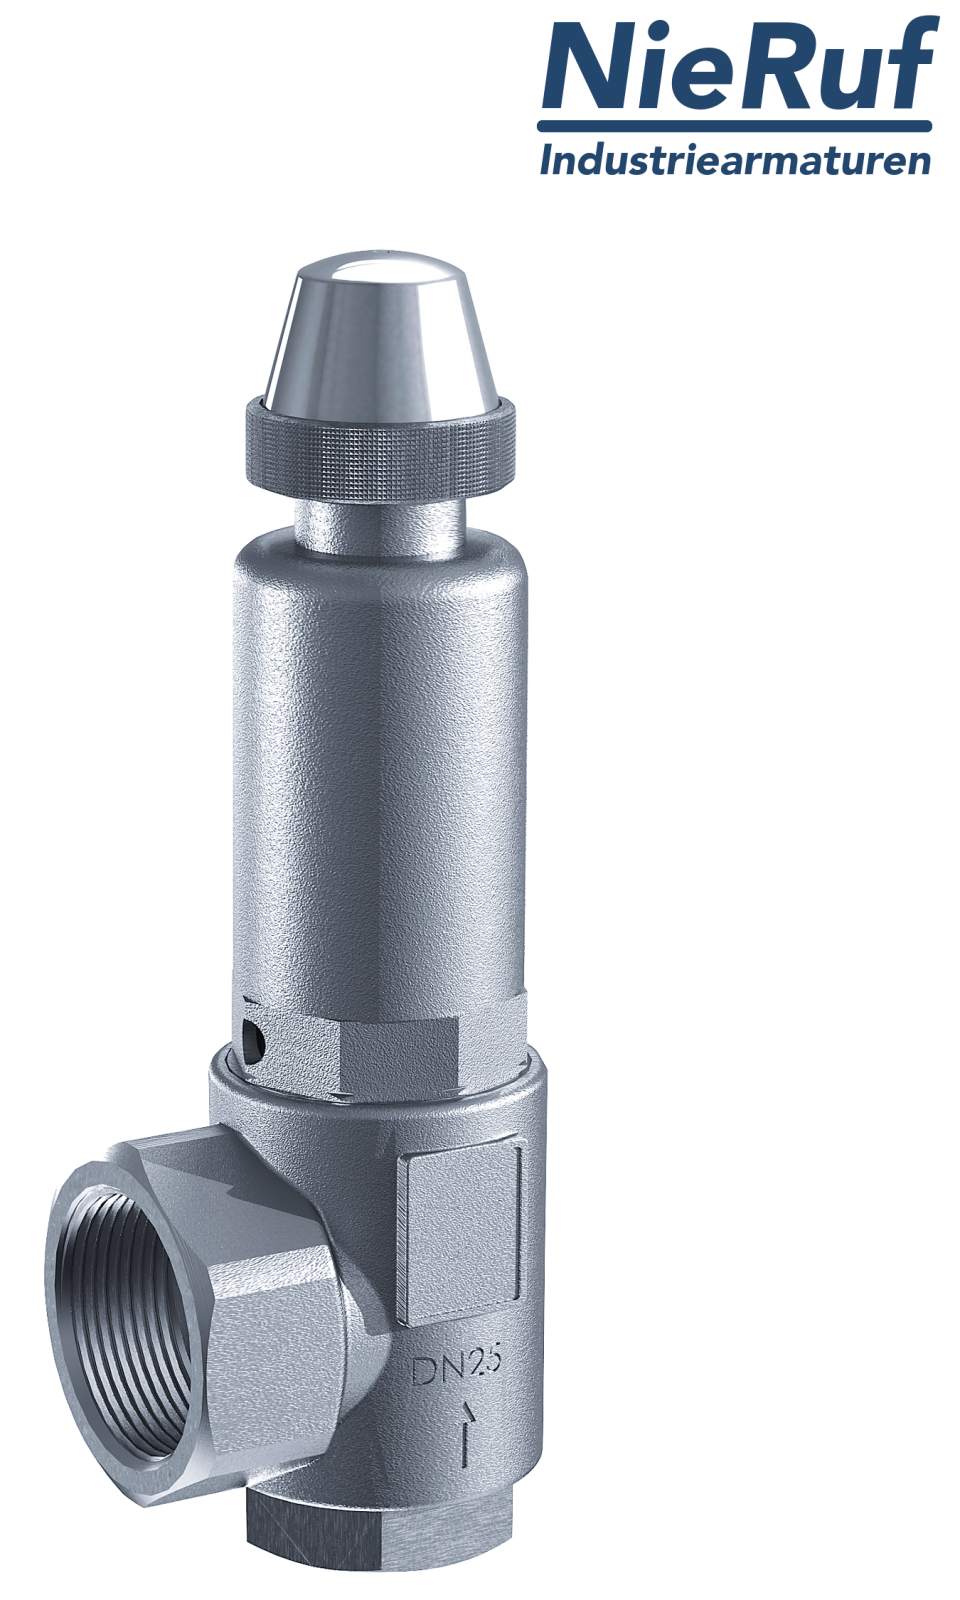 safety valve 1 1/2" x 2" fm SV05 neutral liquid media, stainless steel FKM